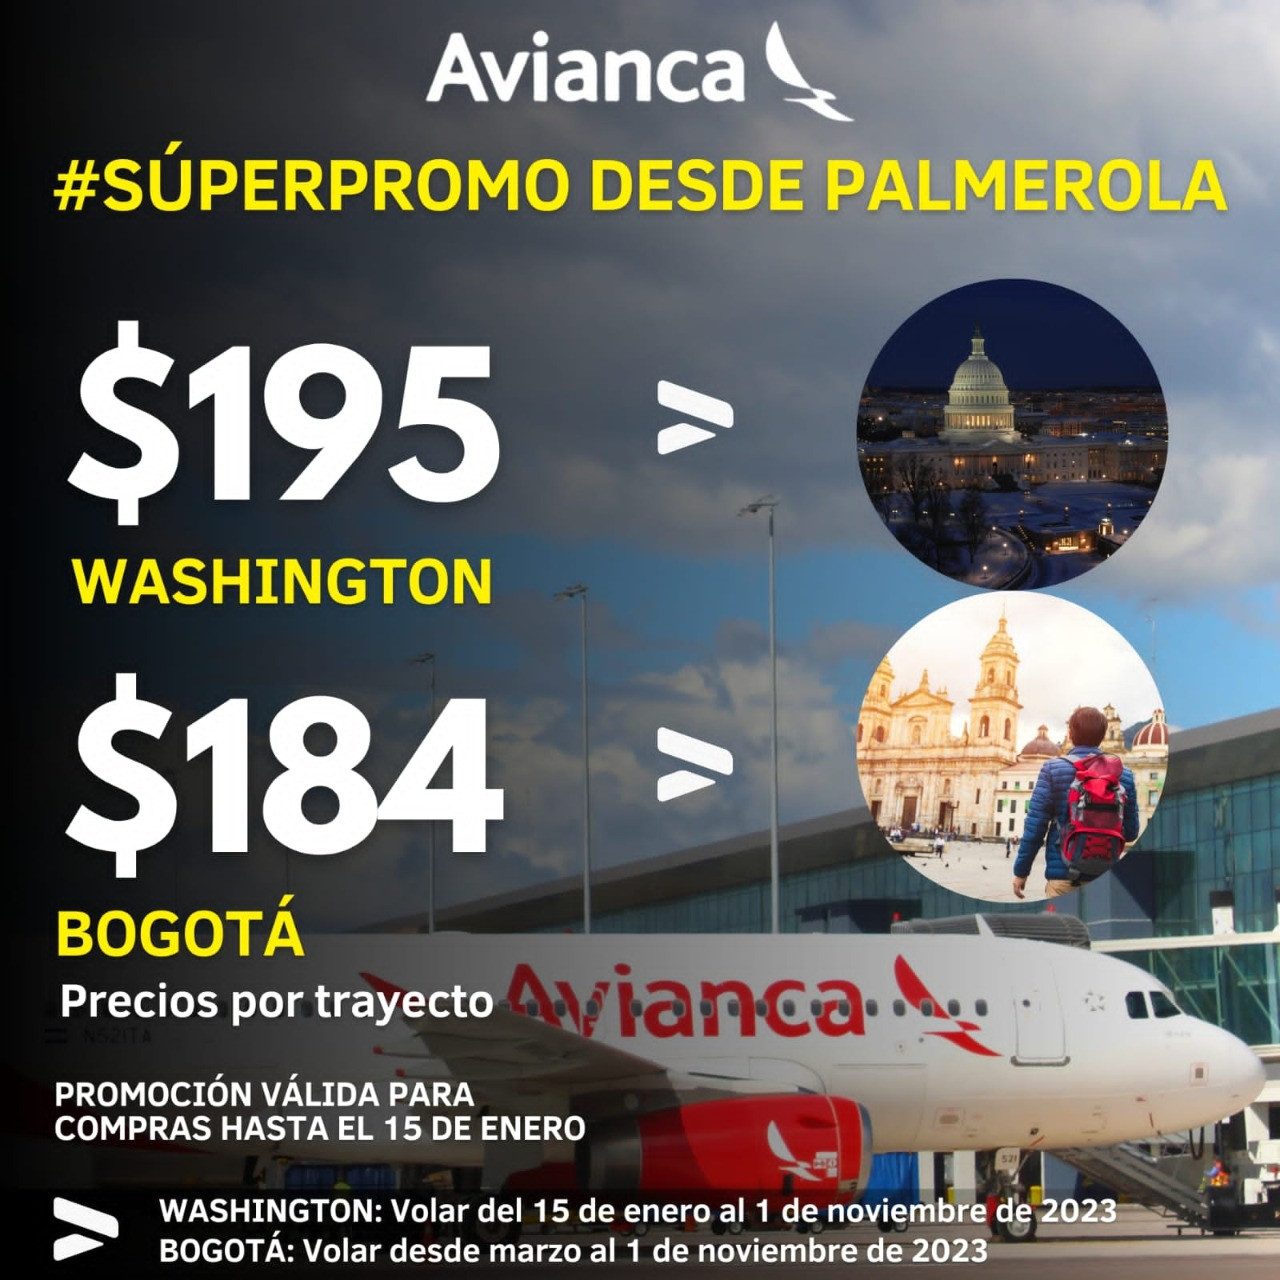 Palmerola: Avianca lanza promoción de vuelos a Washington a $195 y a Bogotá a $184 por trayecto